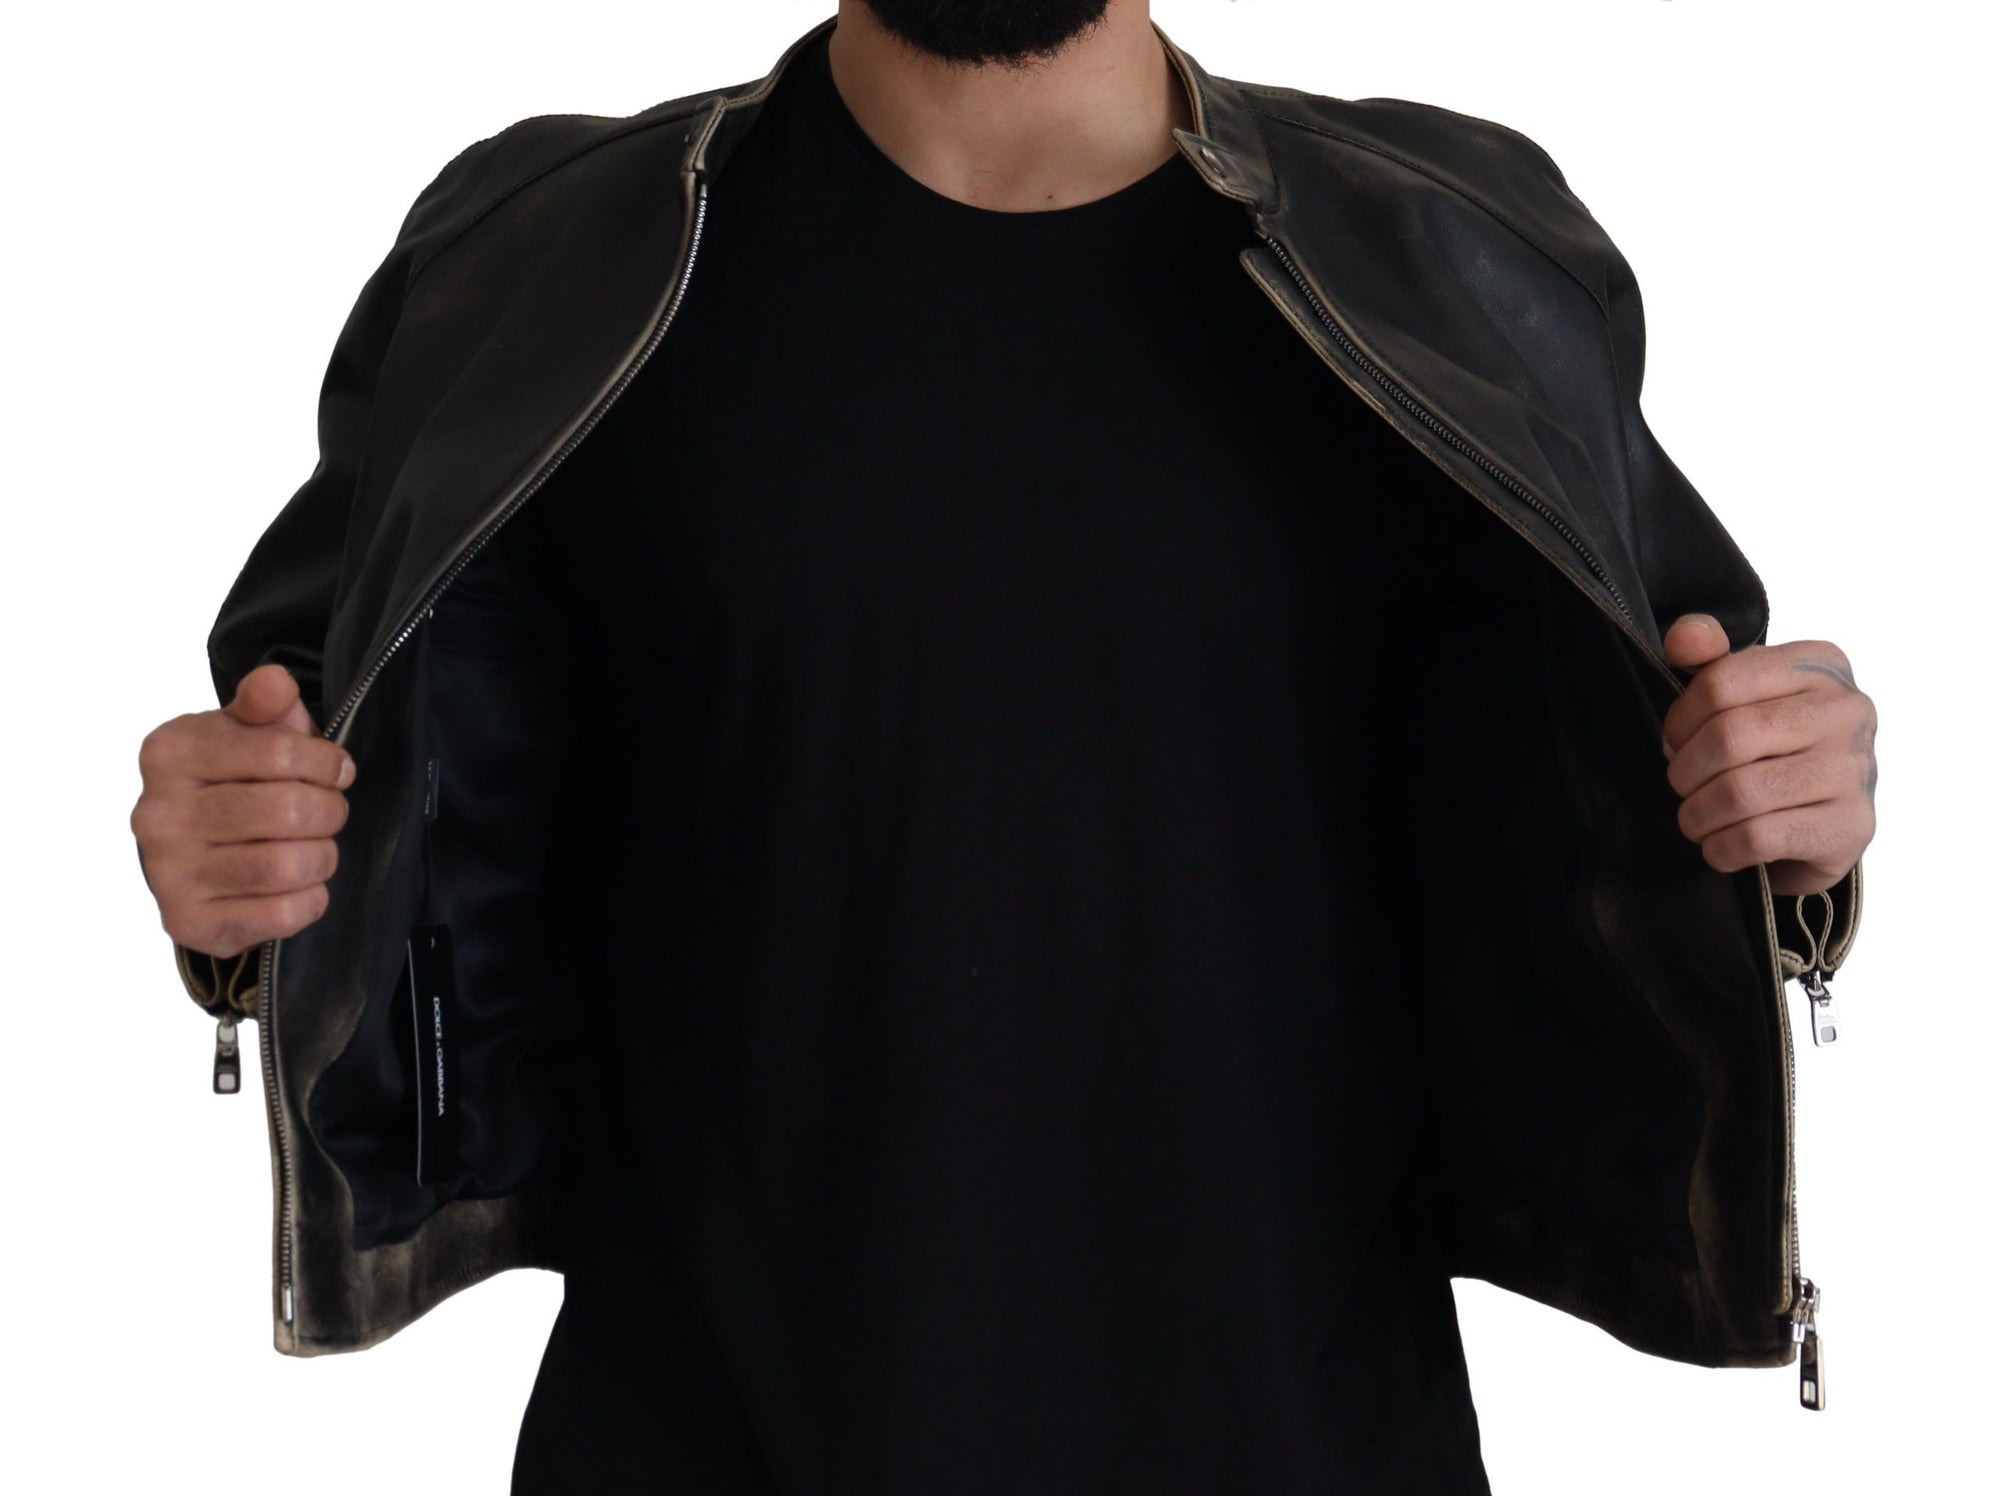 Elegant Black Leather Jacket with Silver Details